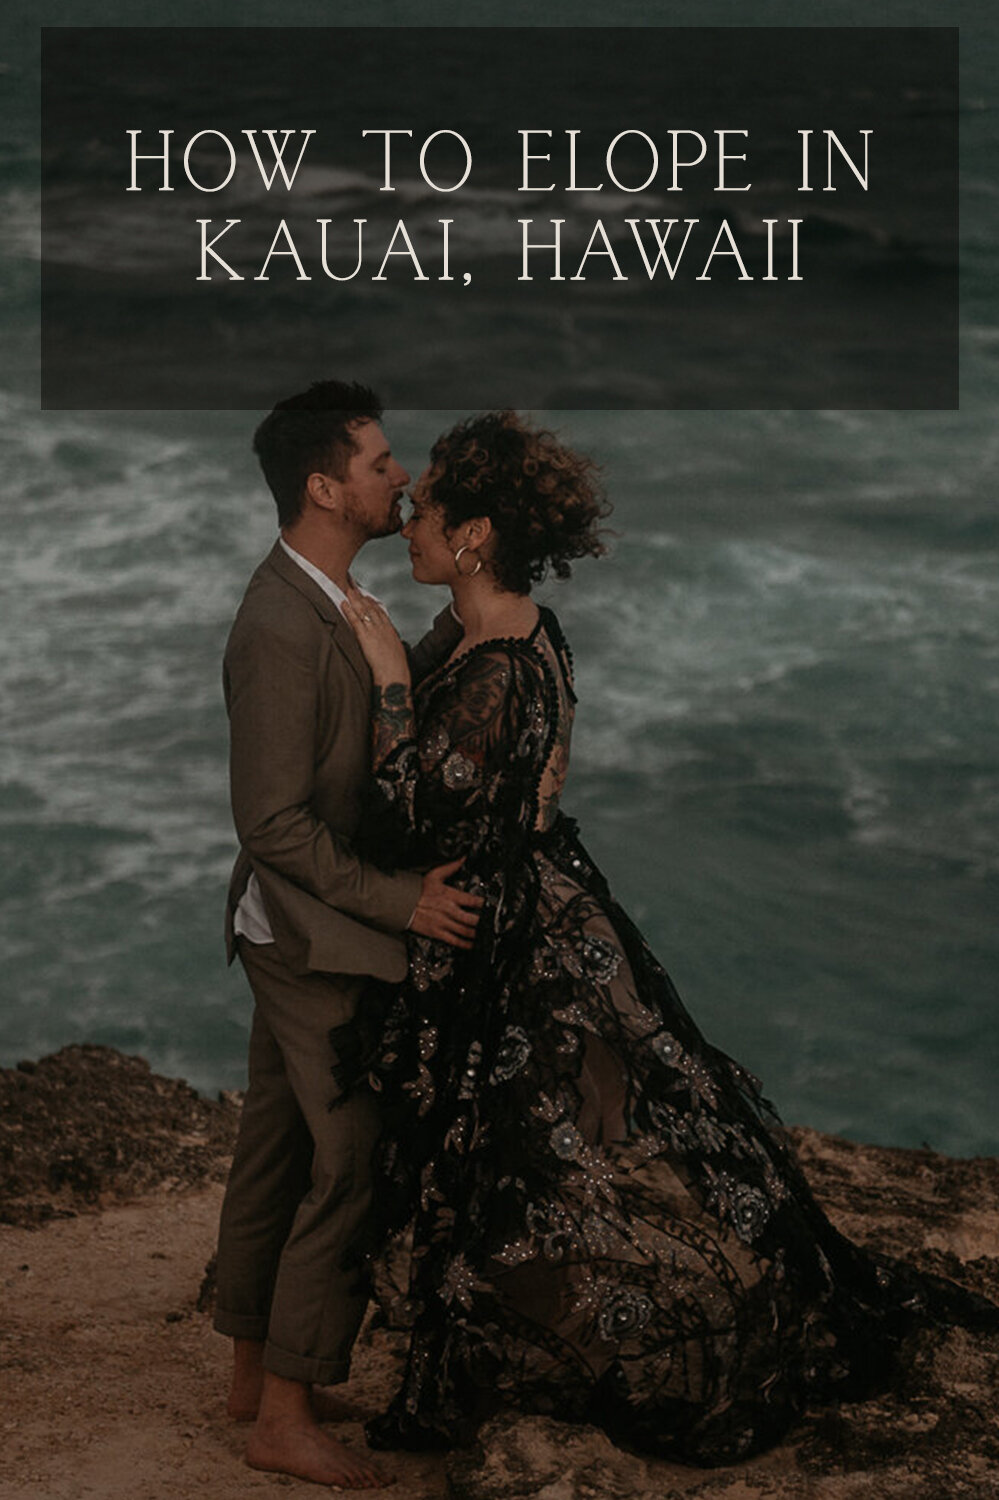 how-to-elope-in-kauai-hawaii.jpg